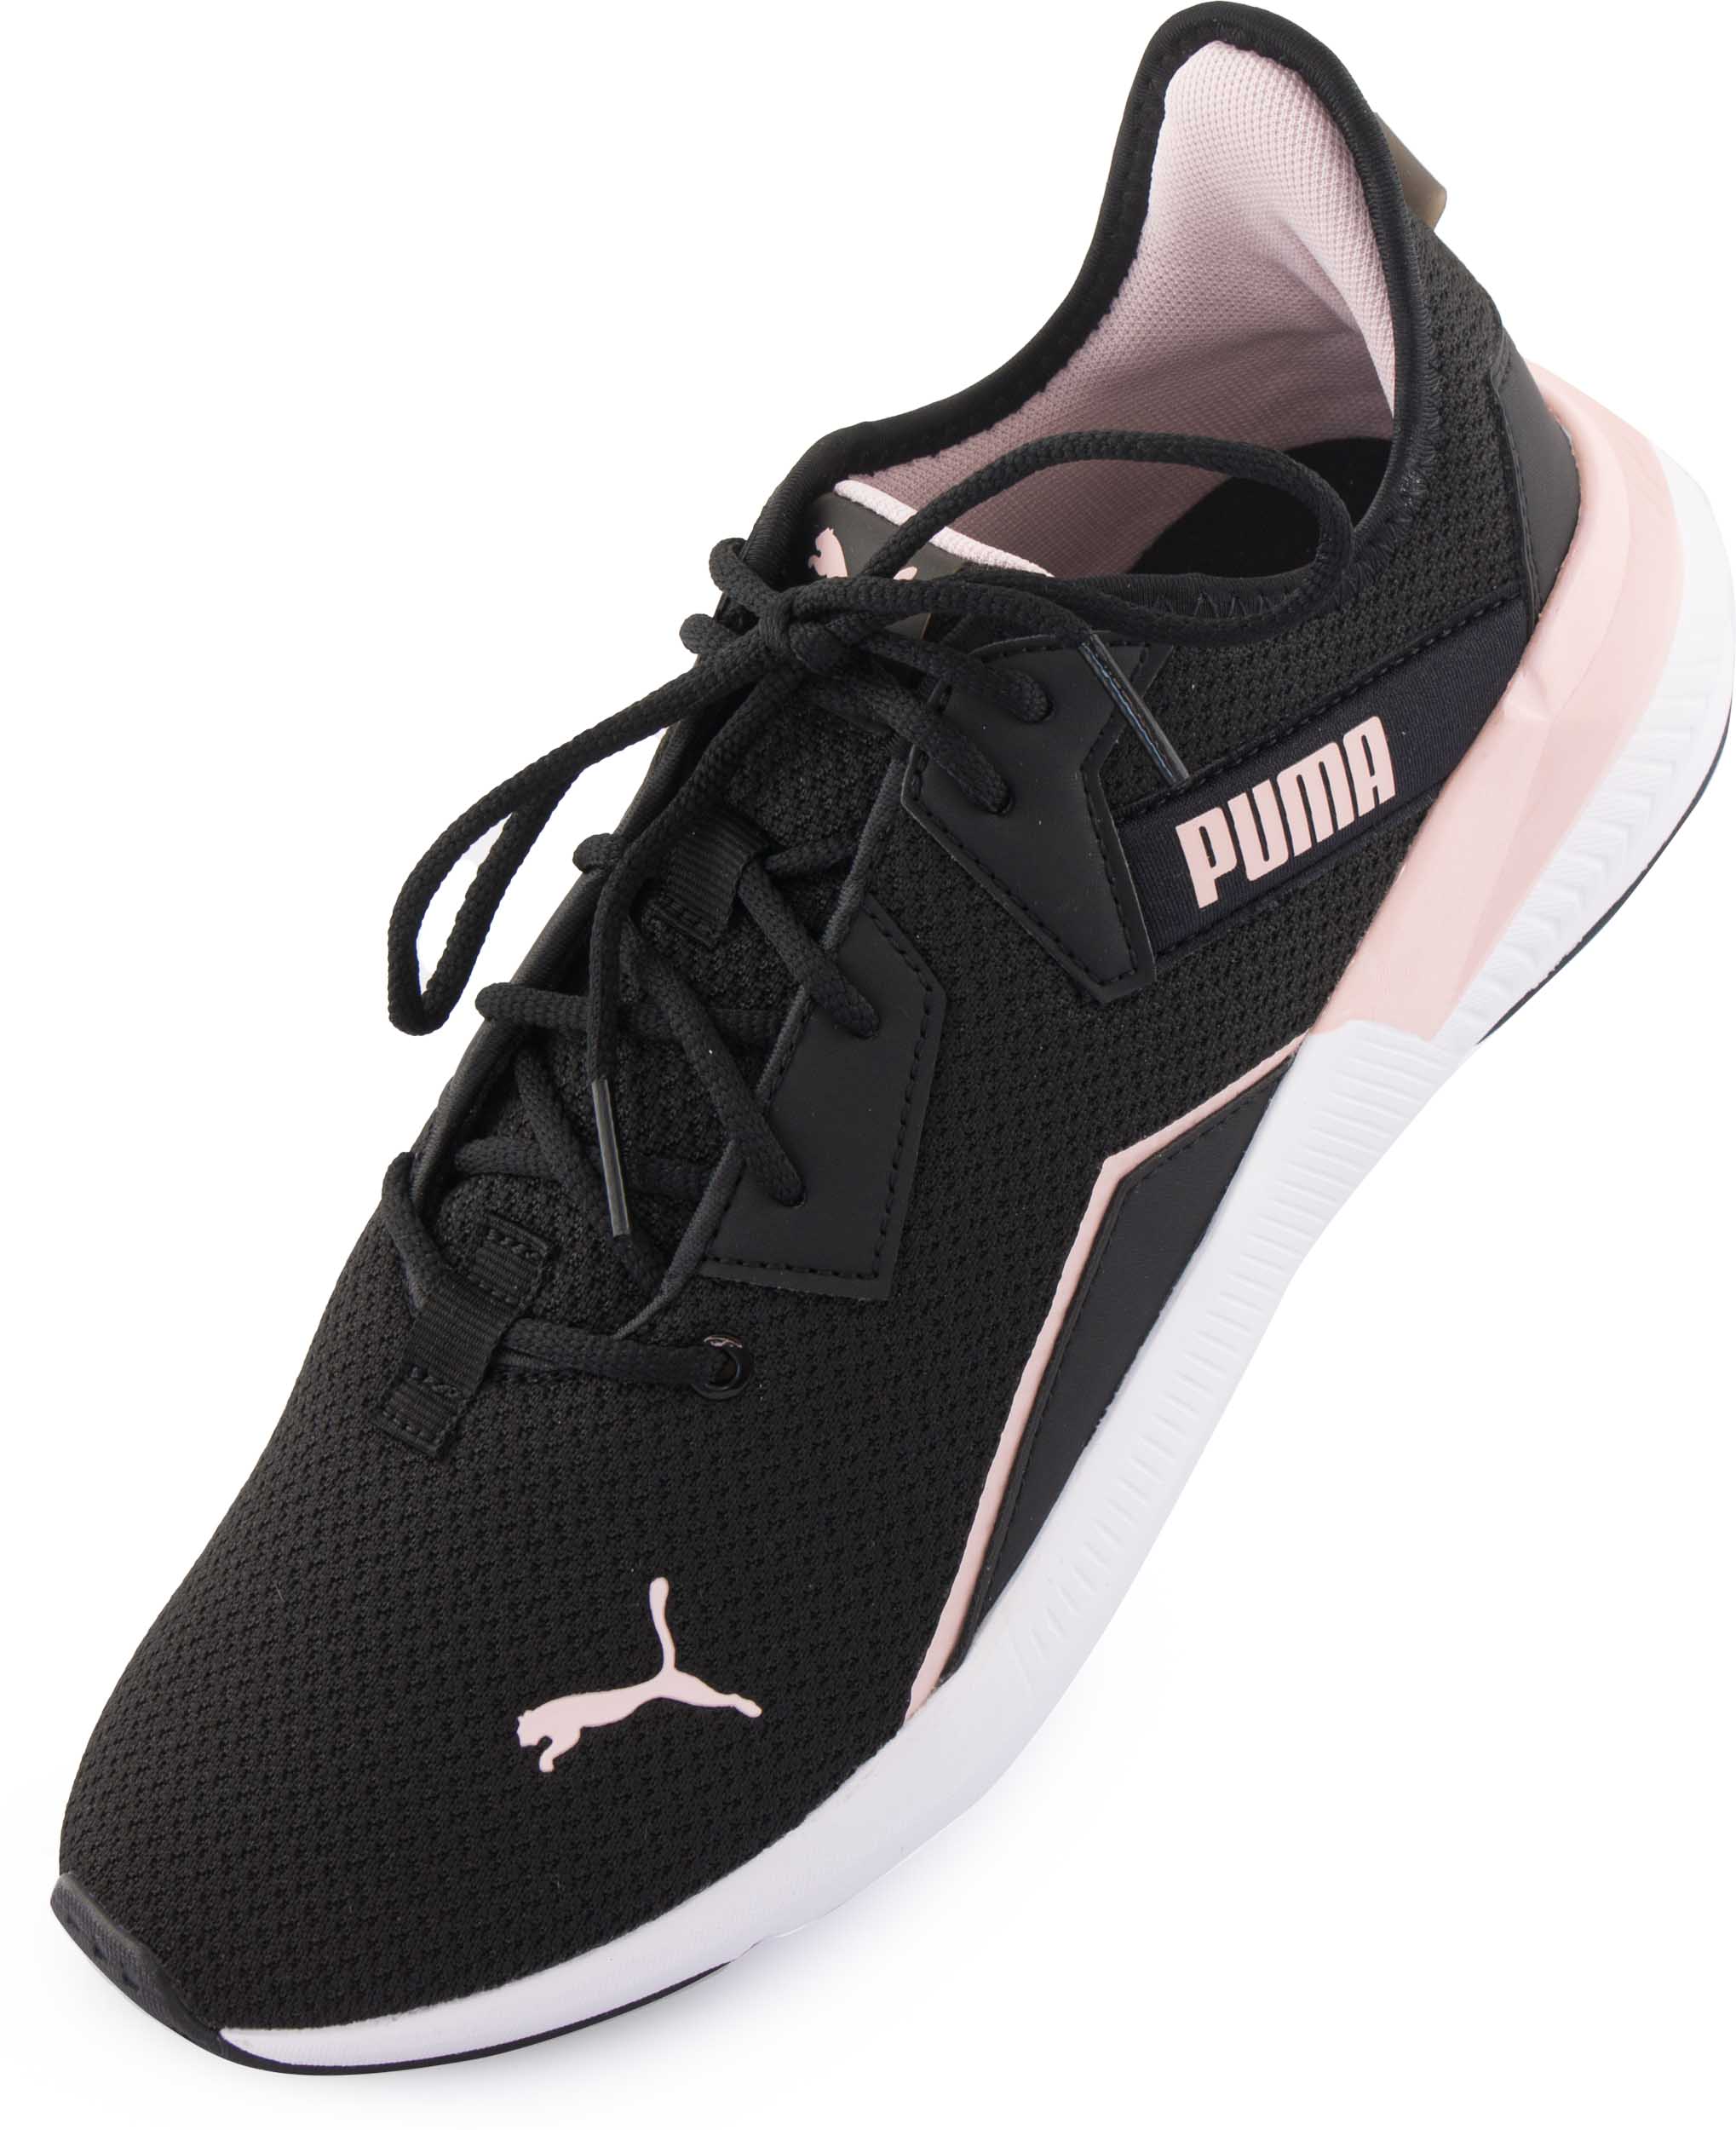 Dámské sportovní boty Puma Wms Platinum Shimmer Black Lotus|36